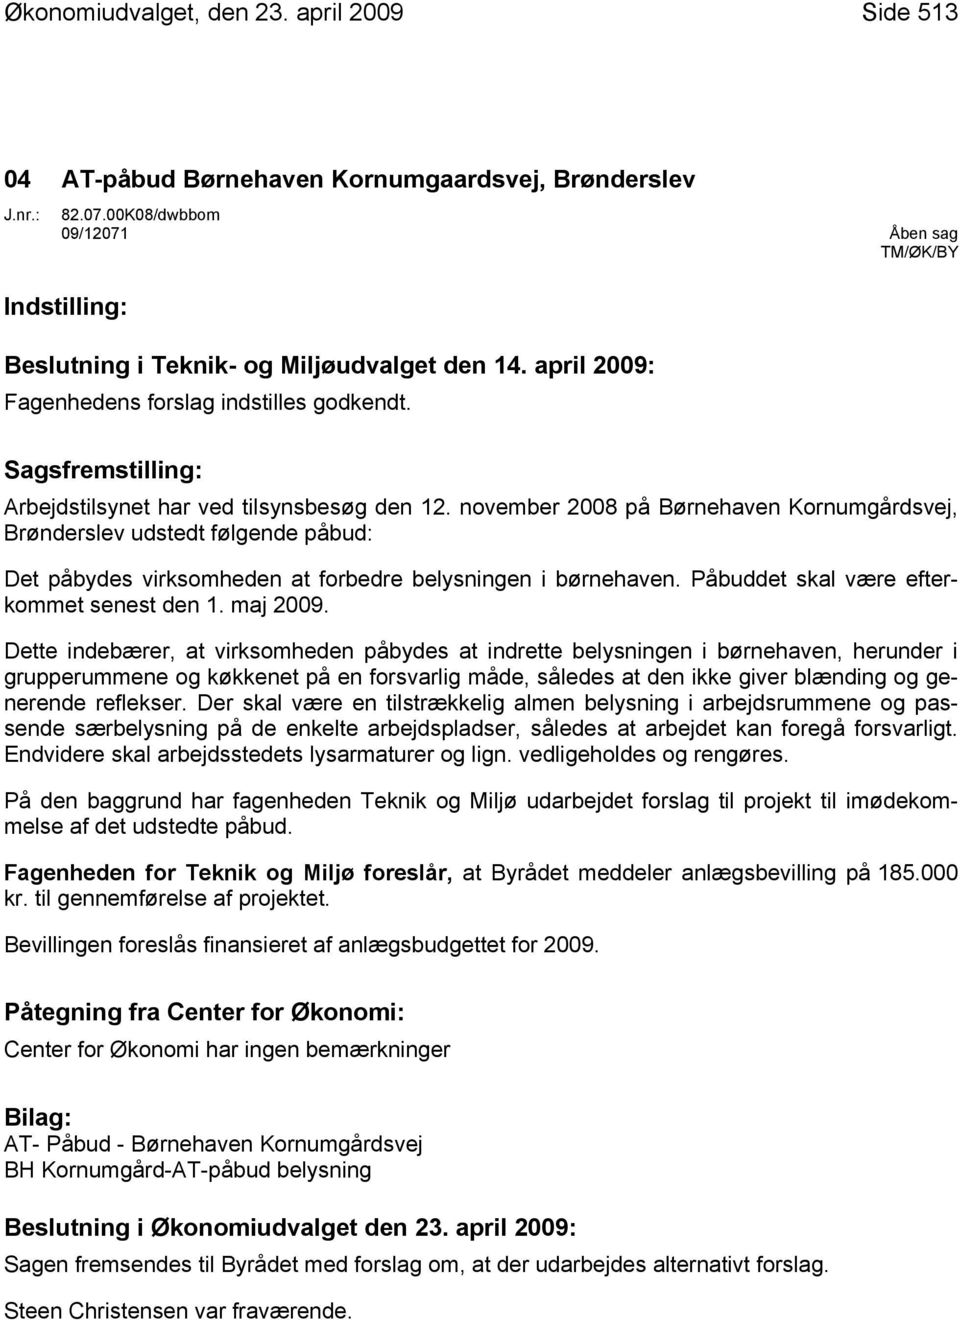 november 2008 på Børnehaven Kornumgårdsvej, Brønderslev udstedt følgende påbud: Det påbydes virksomheden at forbedre belysningen i børnehaven. Påbuddet skal være efterkommet senest den 1. maj 2009.